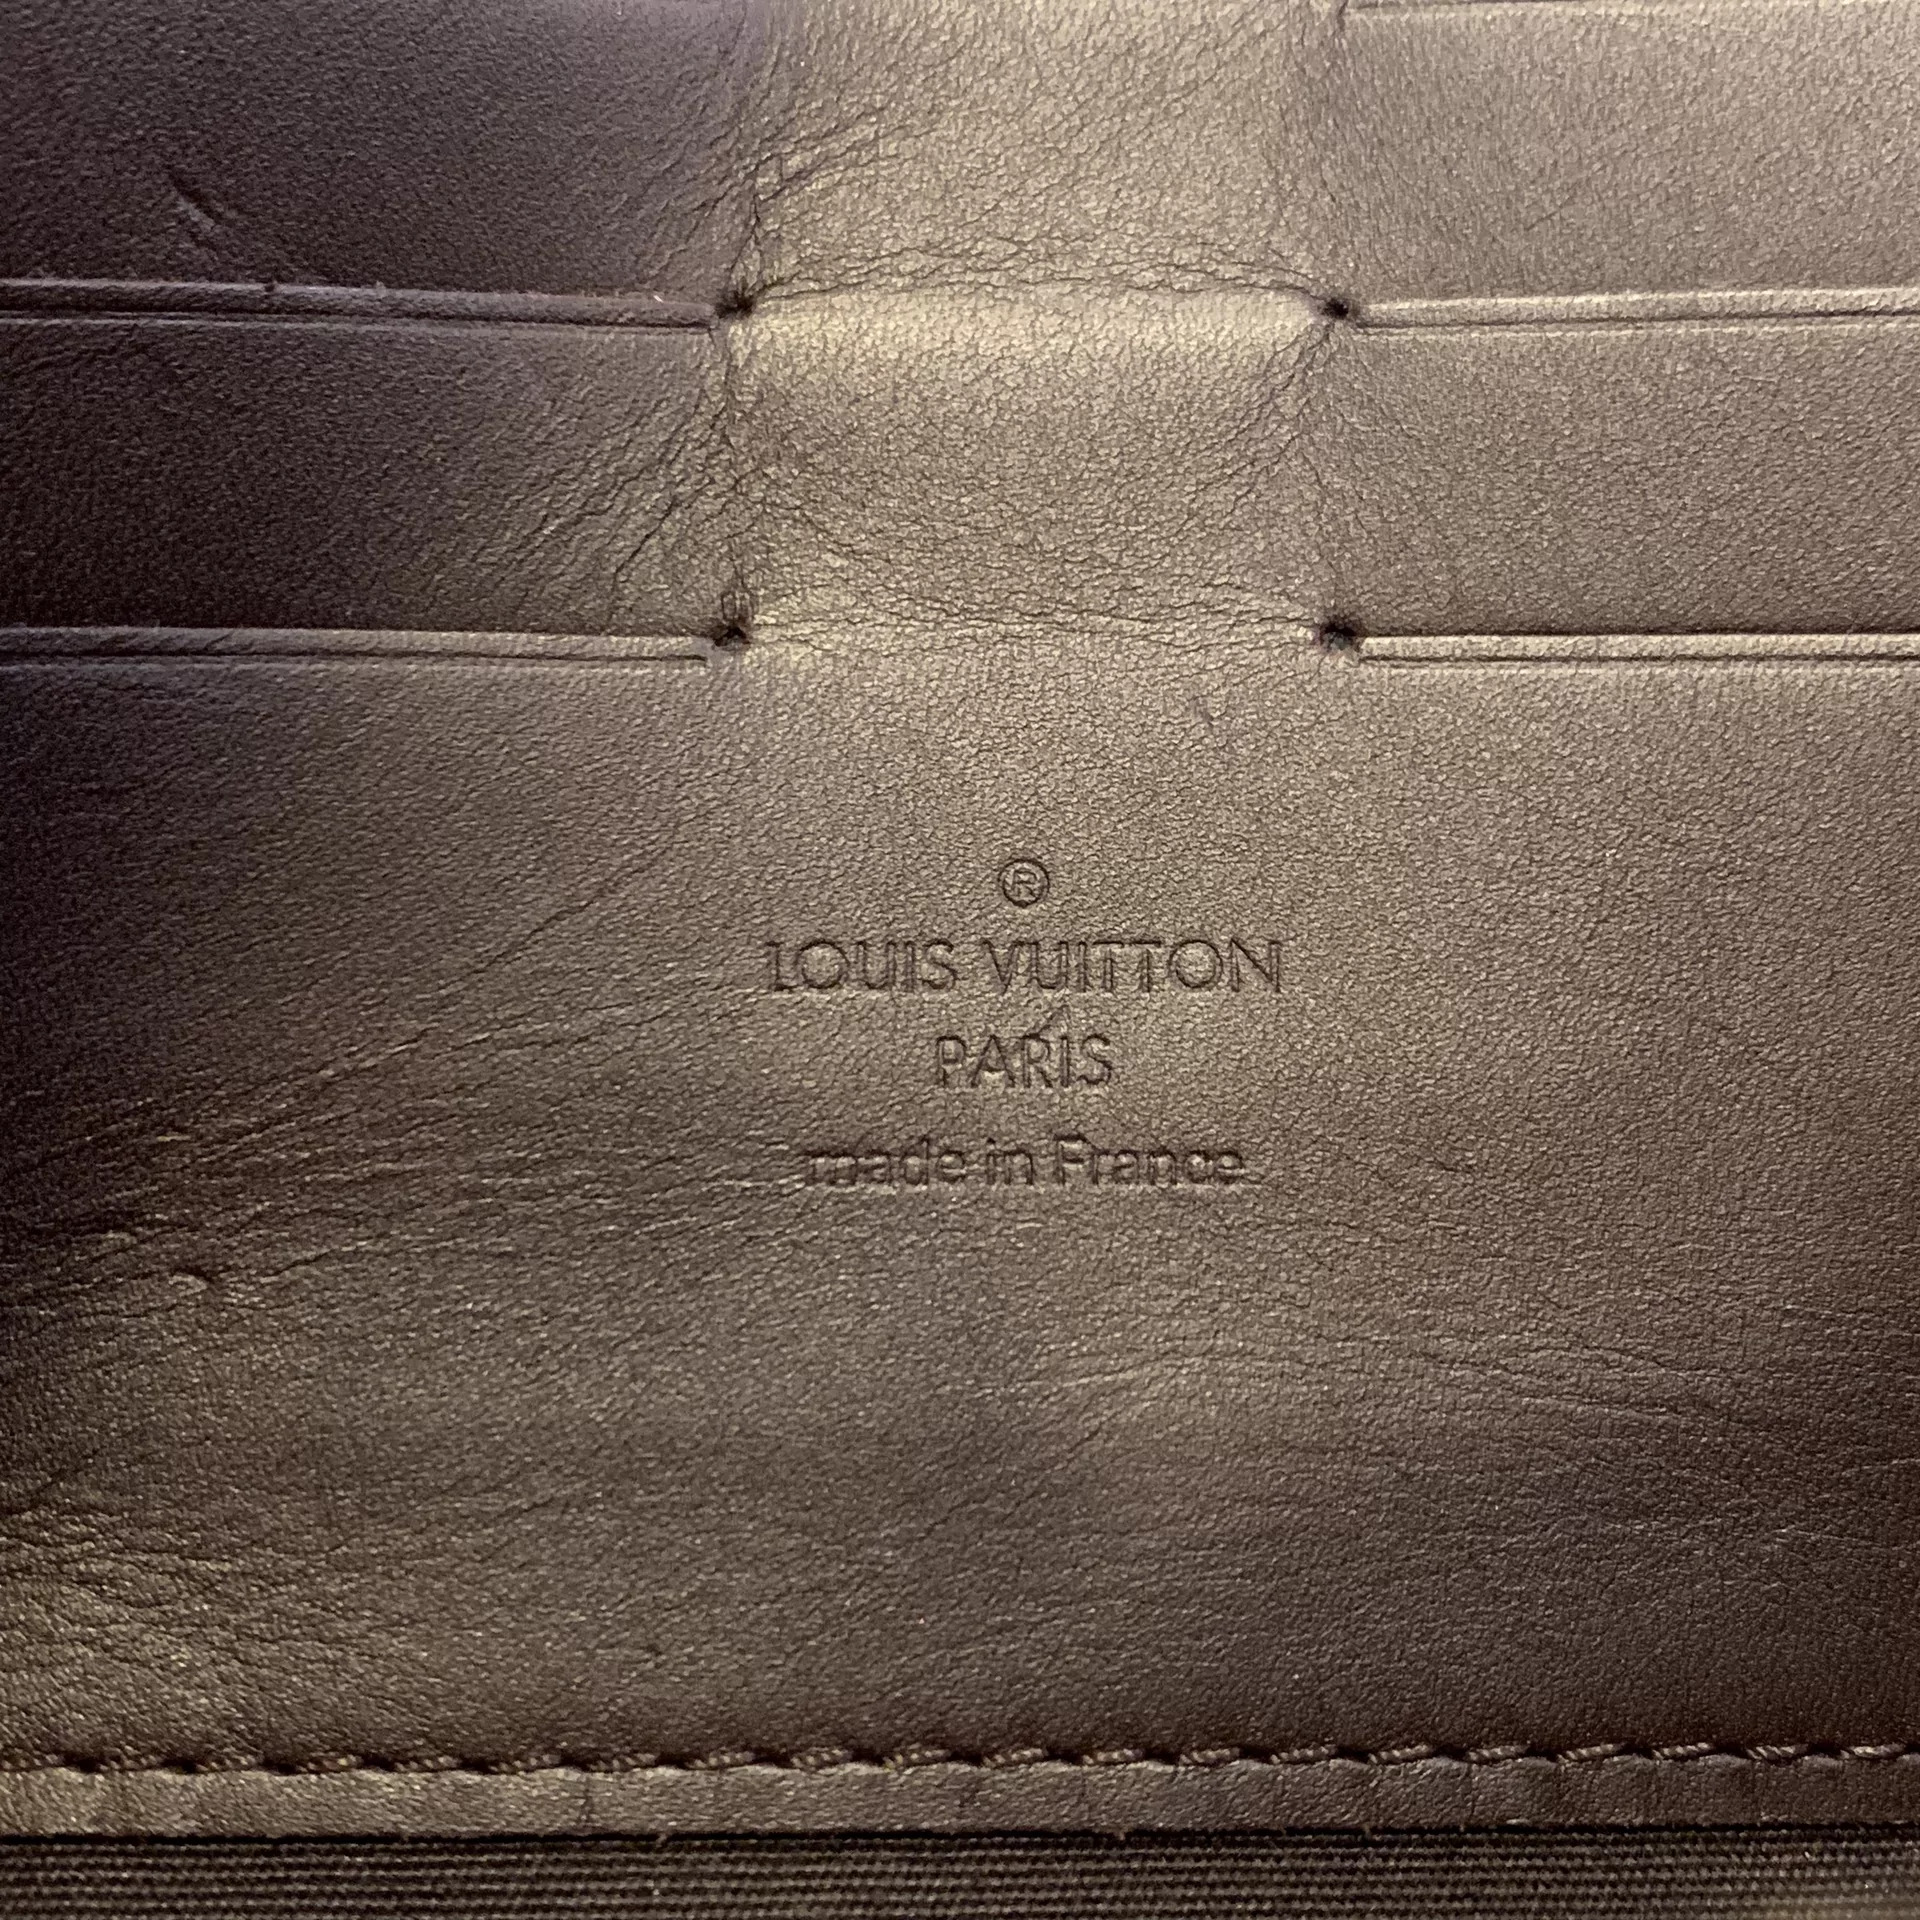 Bolsa Louis Vuitton Sunset Boulevard